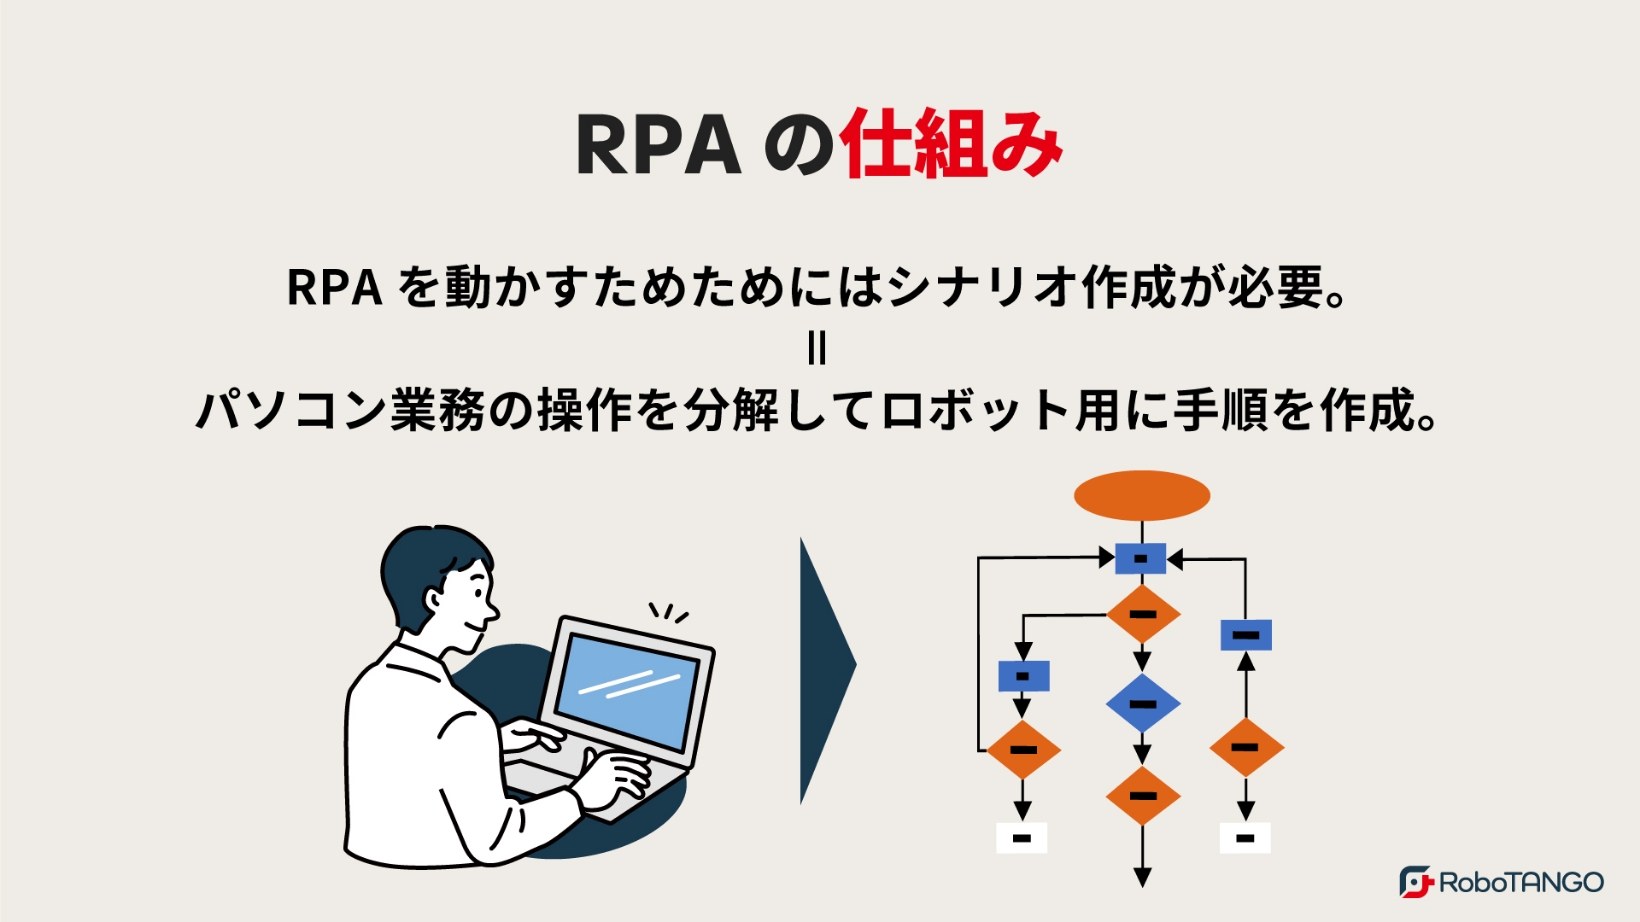 RPAの仕組みについて分かりやすく解説します